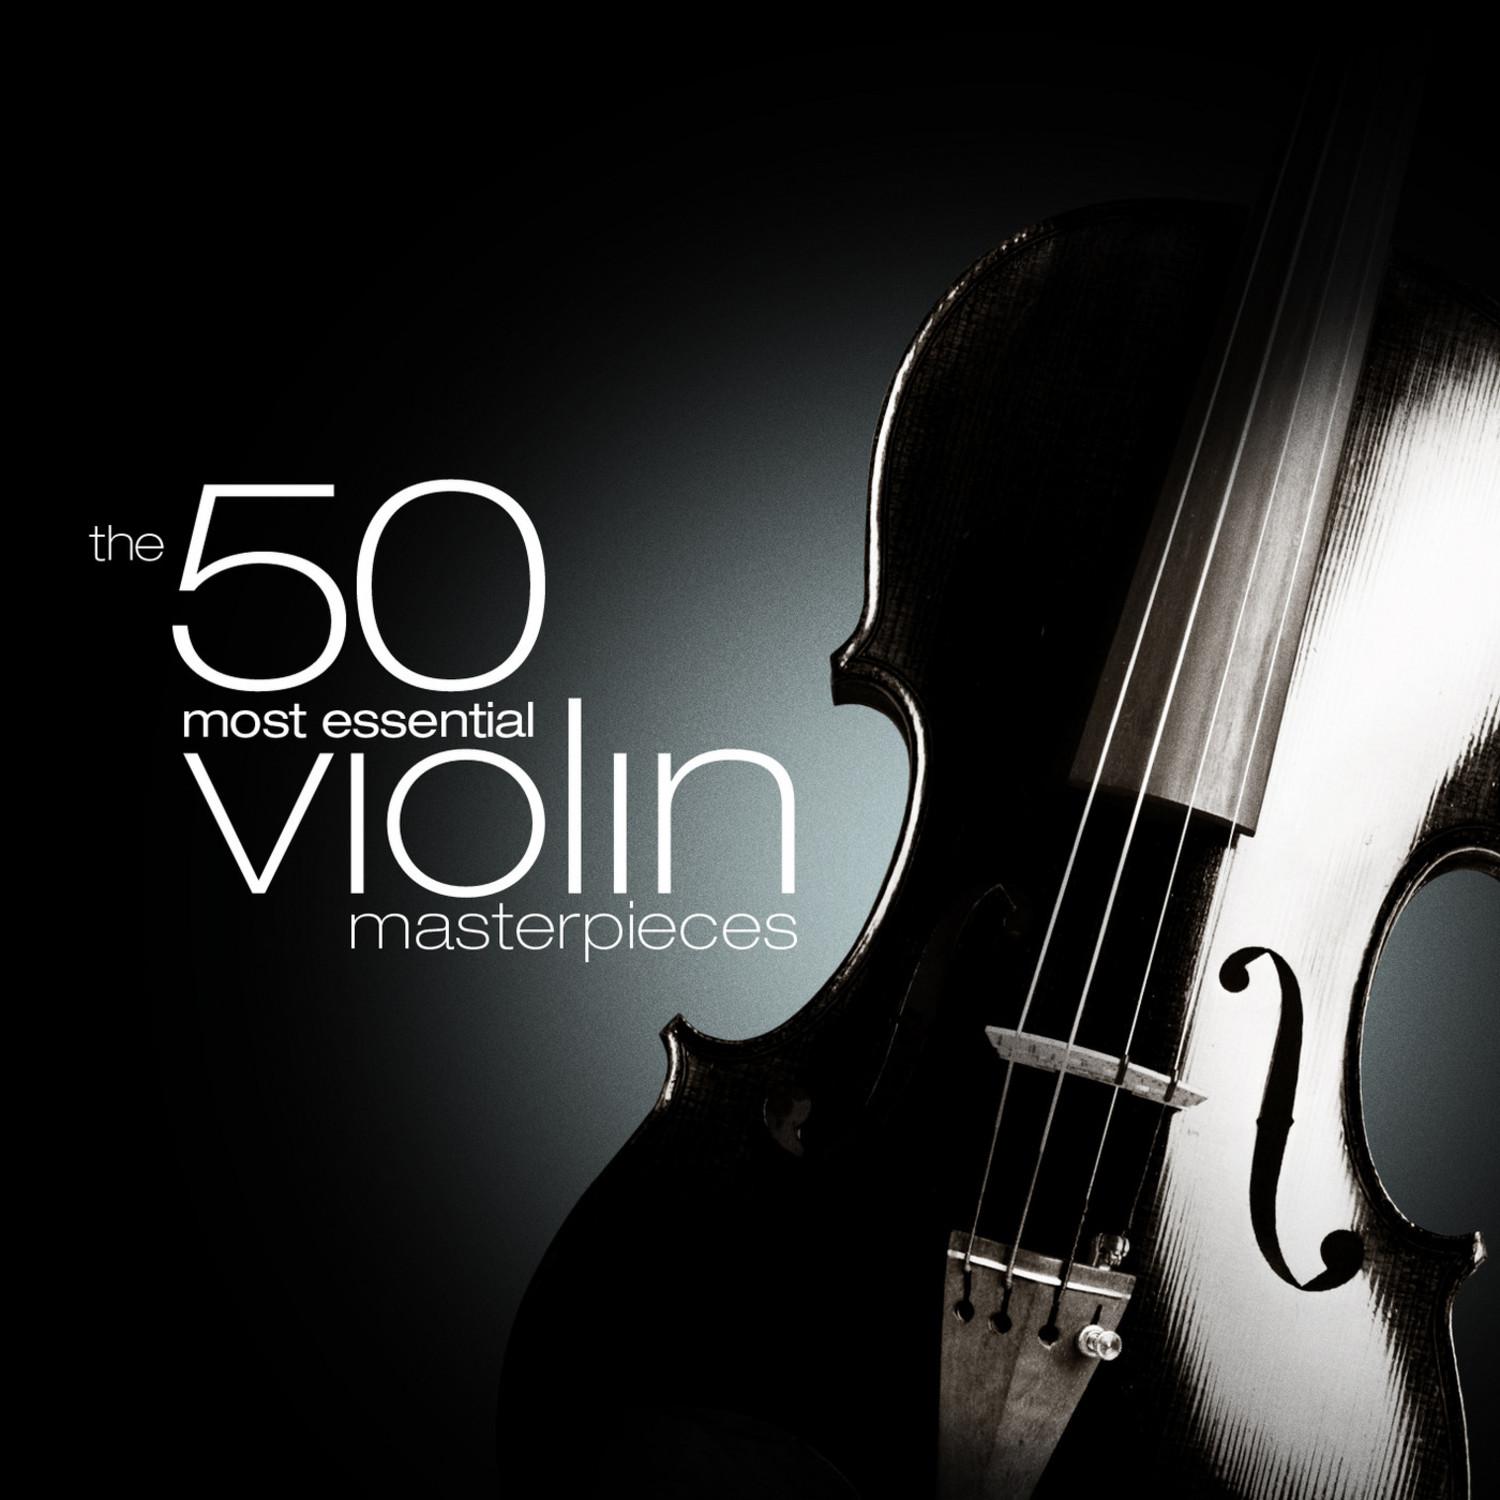 Concerto in E Minor for Violin and Orchestra, Op. 64: III. Allegro molto vivace